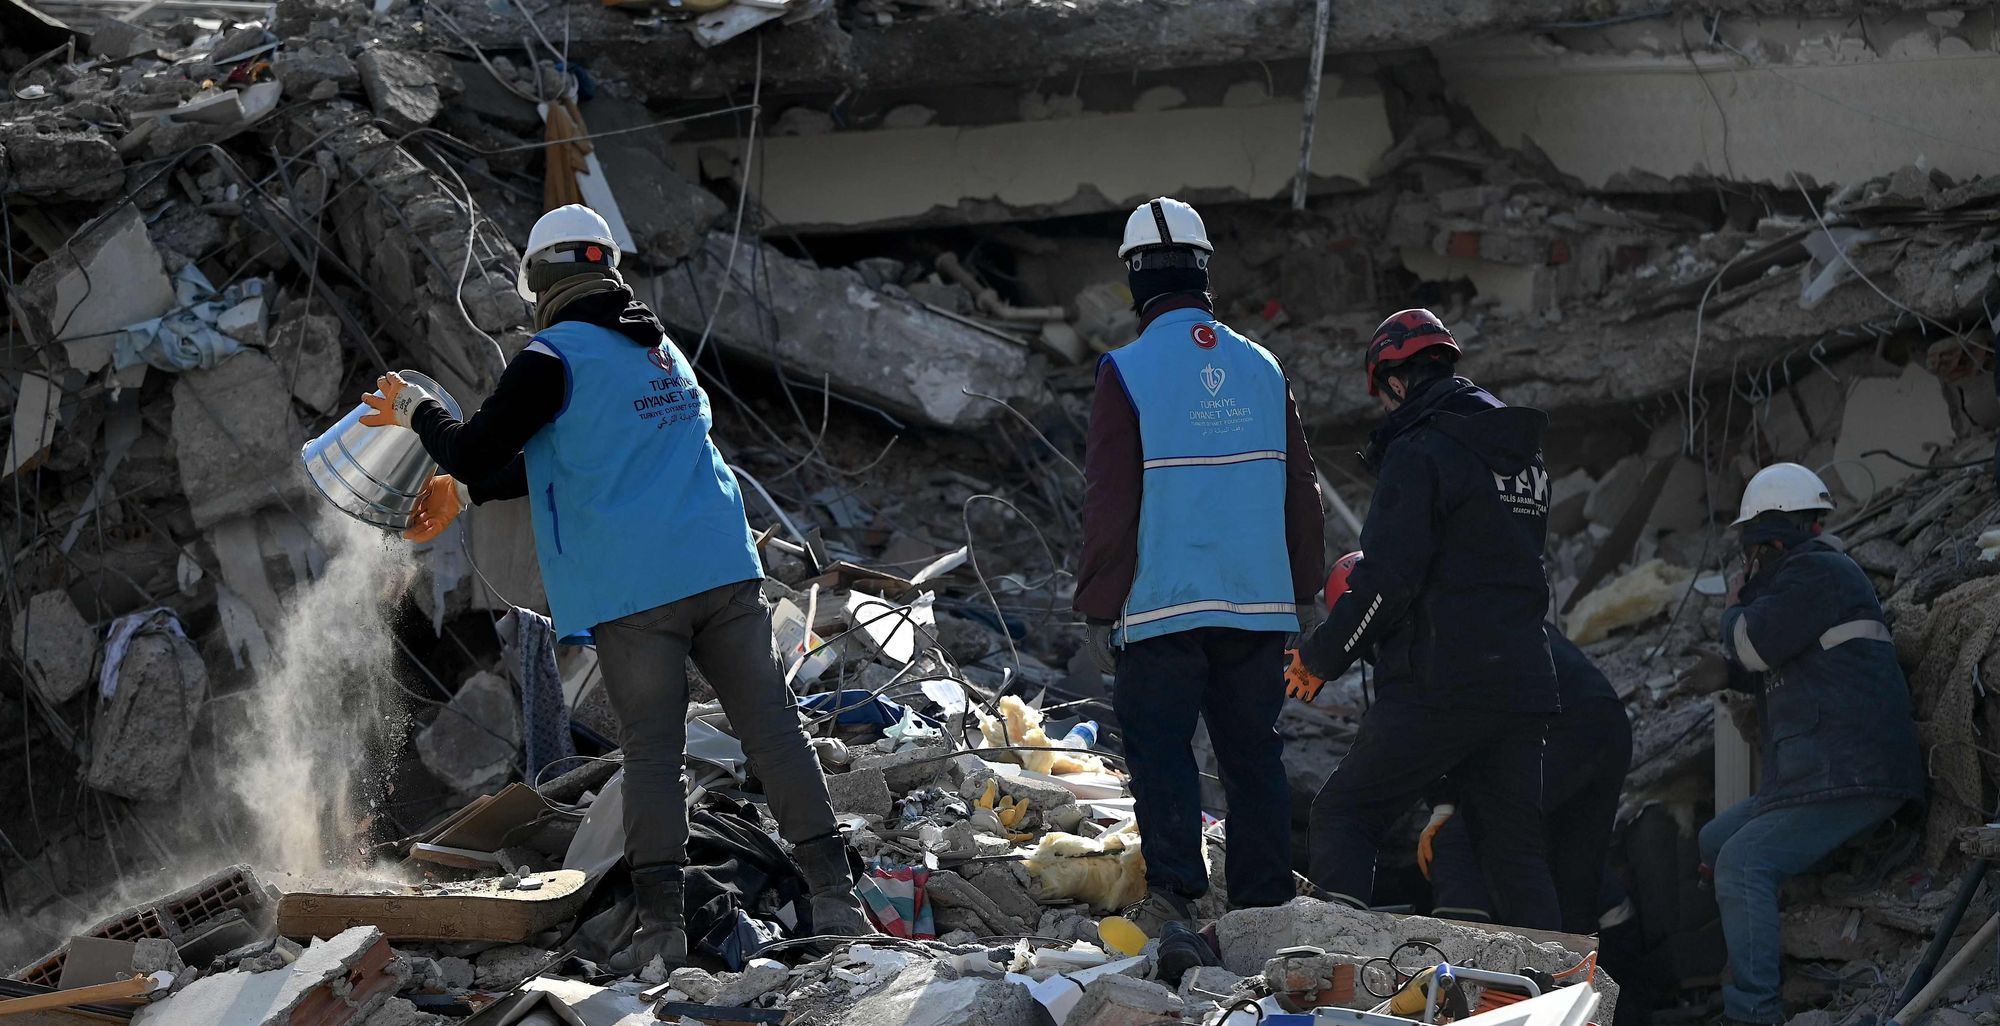 Sau động đất ở Thổ Nhĩ Kỳ: Vì sao việc giải cứu vẫn tiềm ẩn rủi ro “chết người”? - Ảnh 1.